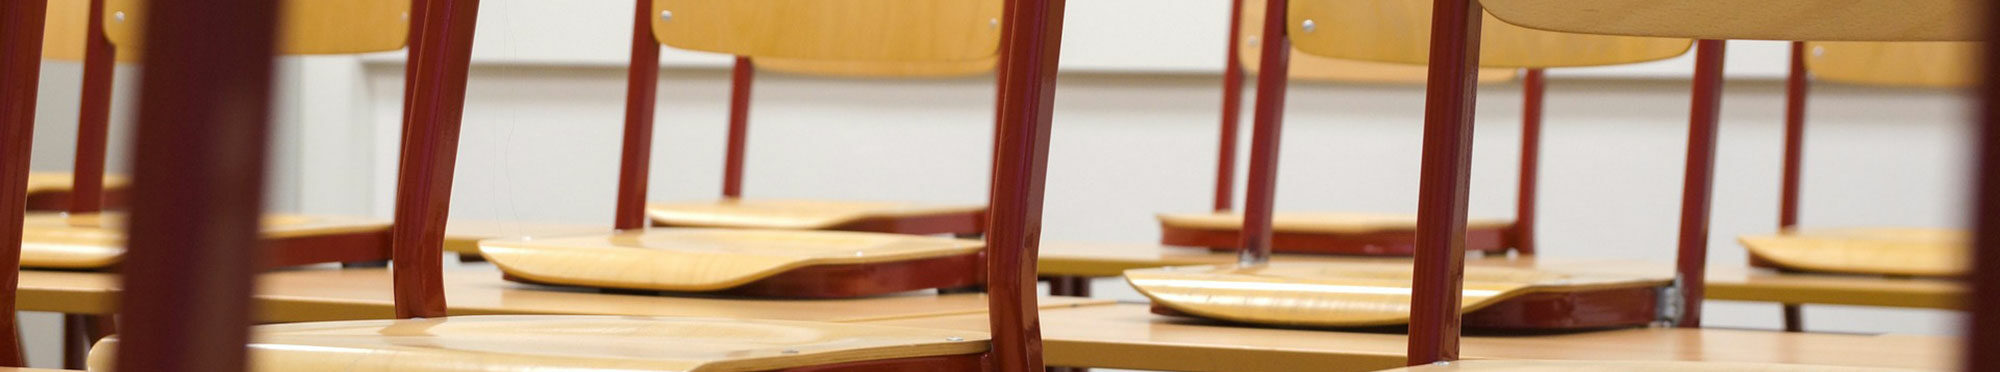 Das Bild zeigt einen Ausschnitt aus einem Klassenzimmer. Die Stühle sind hochgestellt.